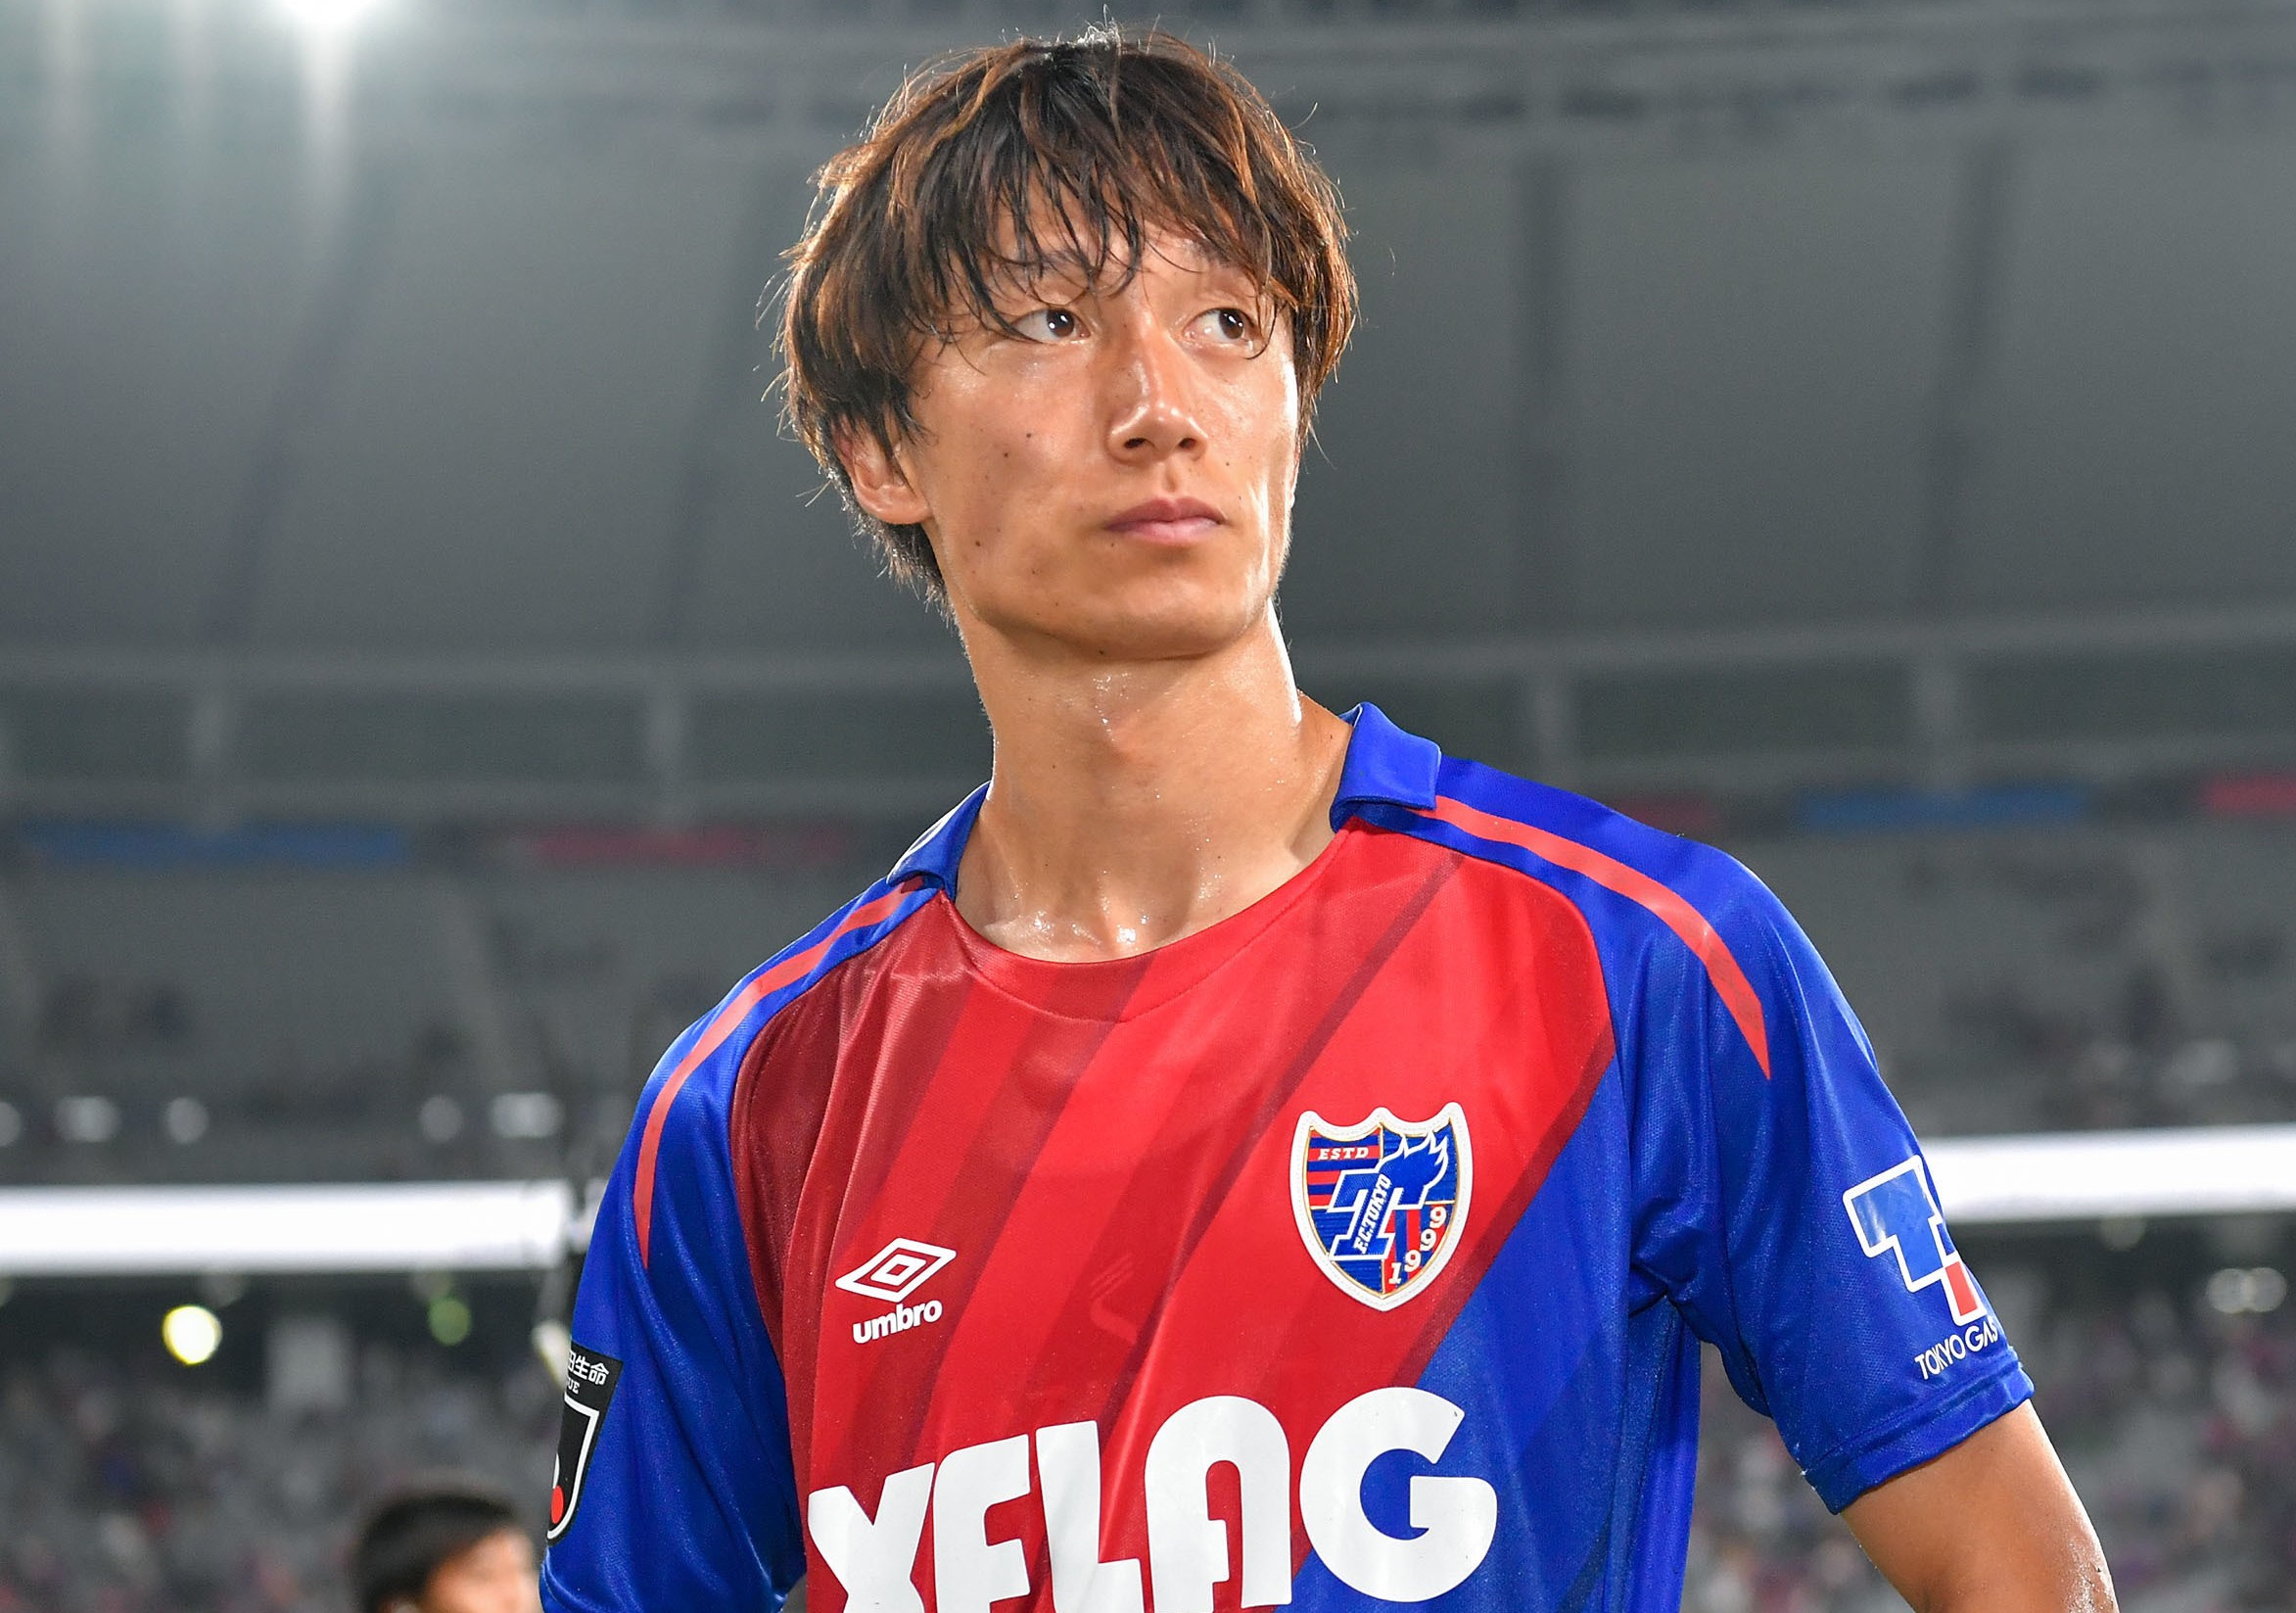 前锋9号铃木武藏,25岁,效力于札幌冈萨多,是球队主力边锋,本赛季代表